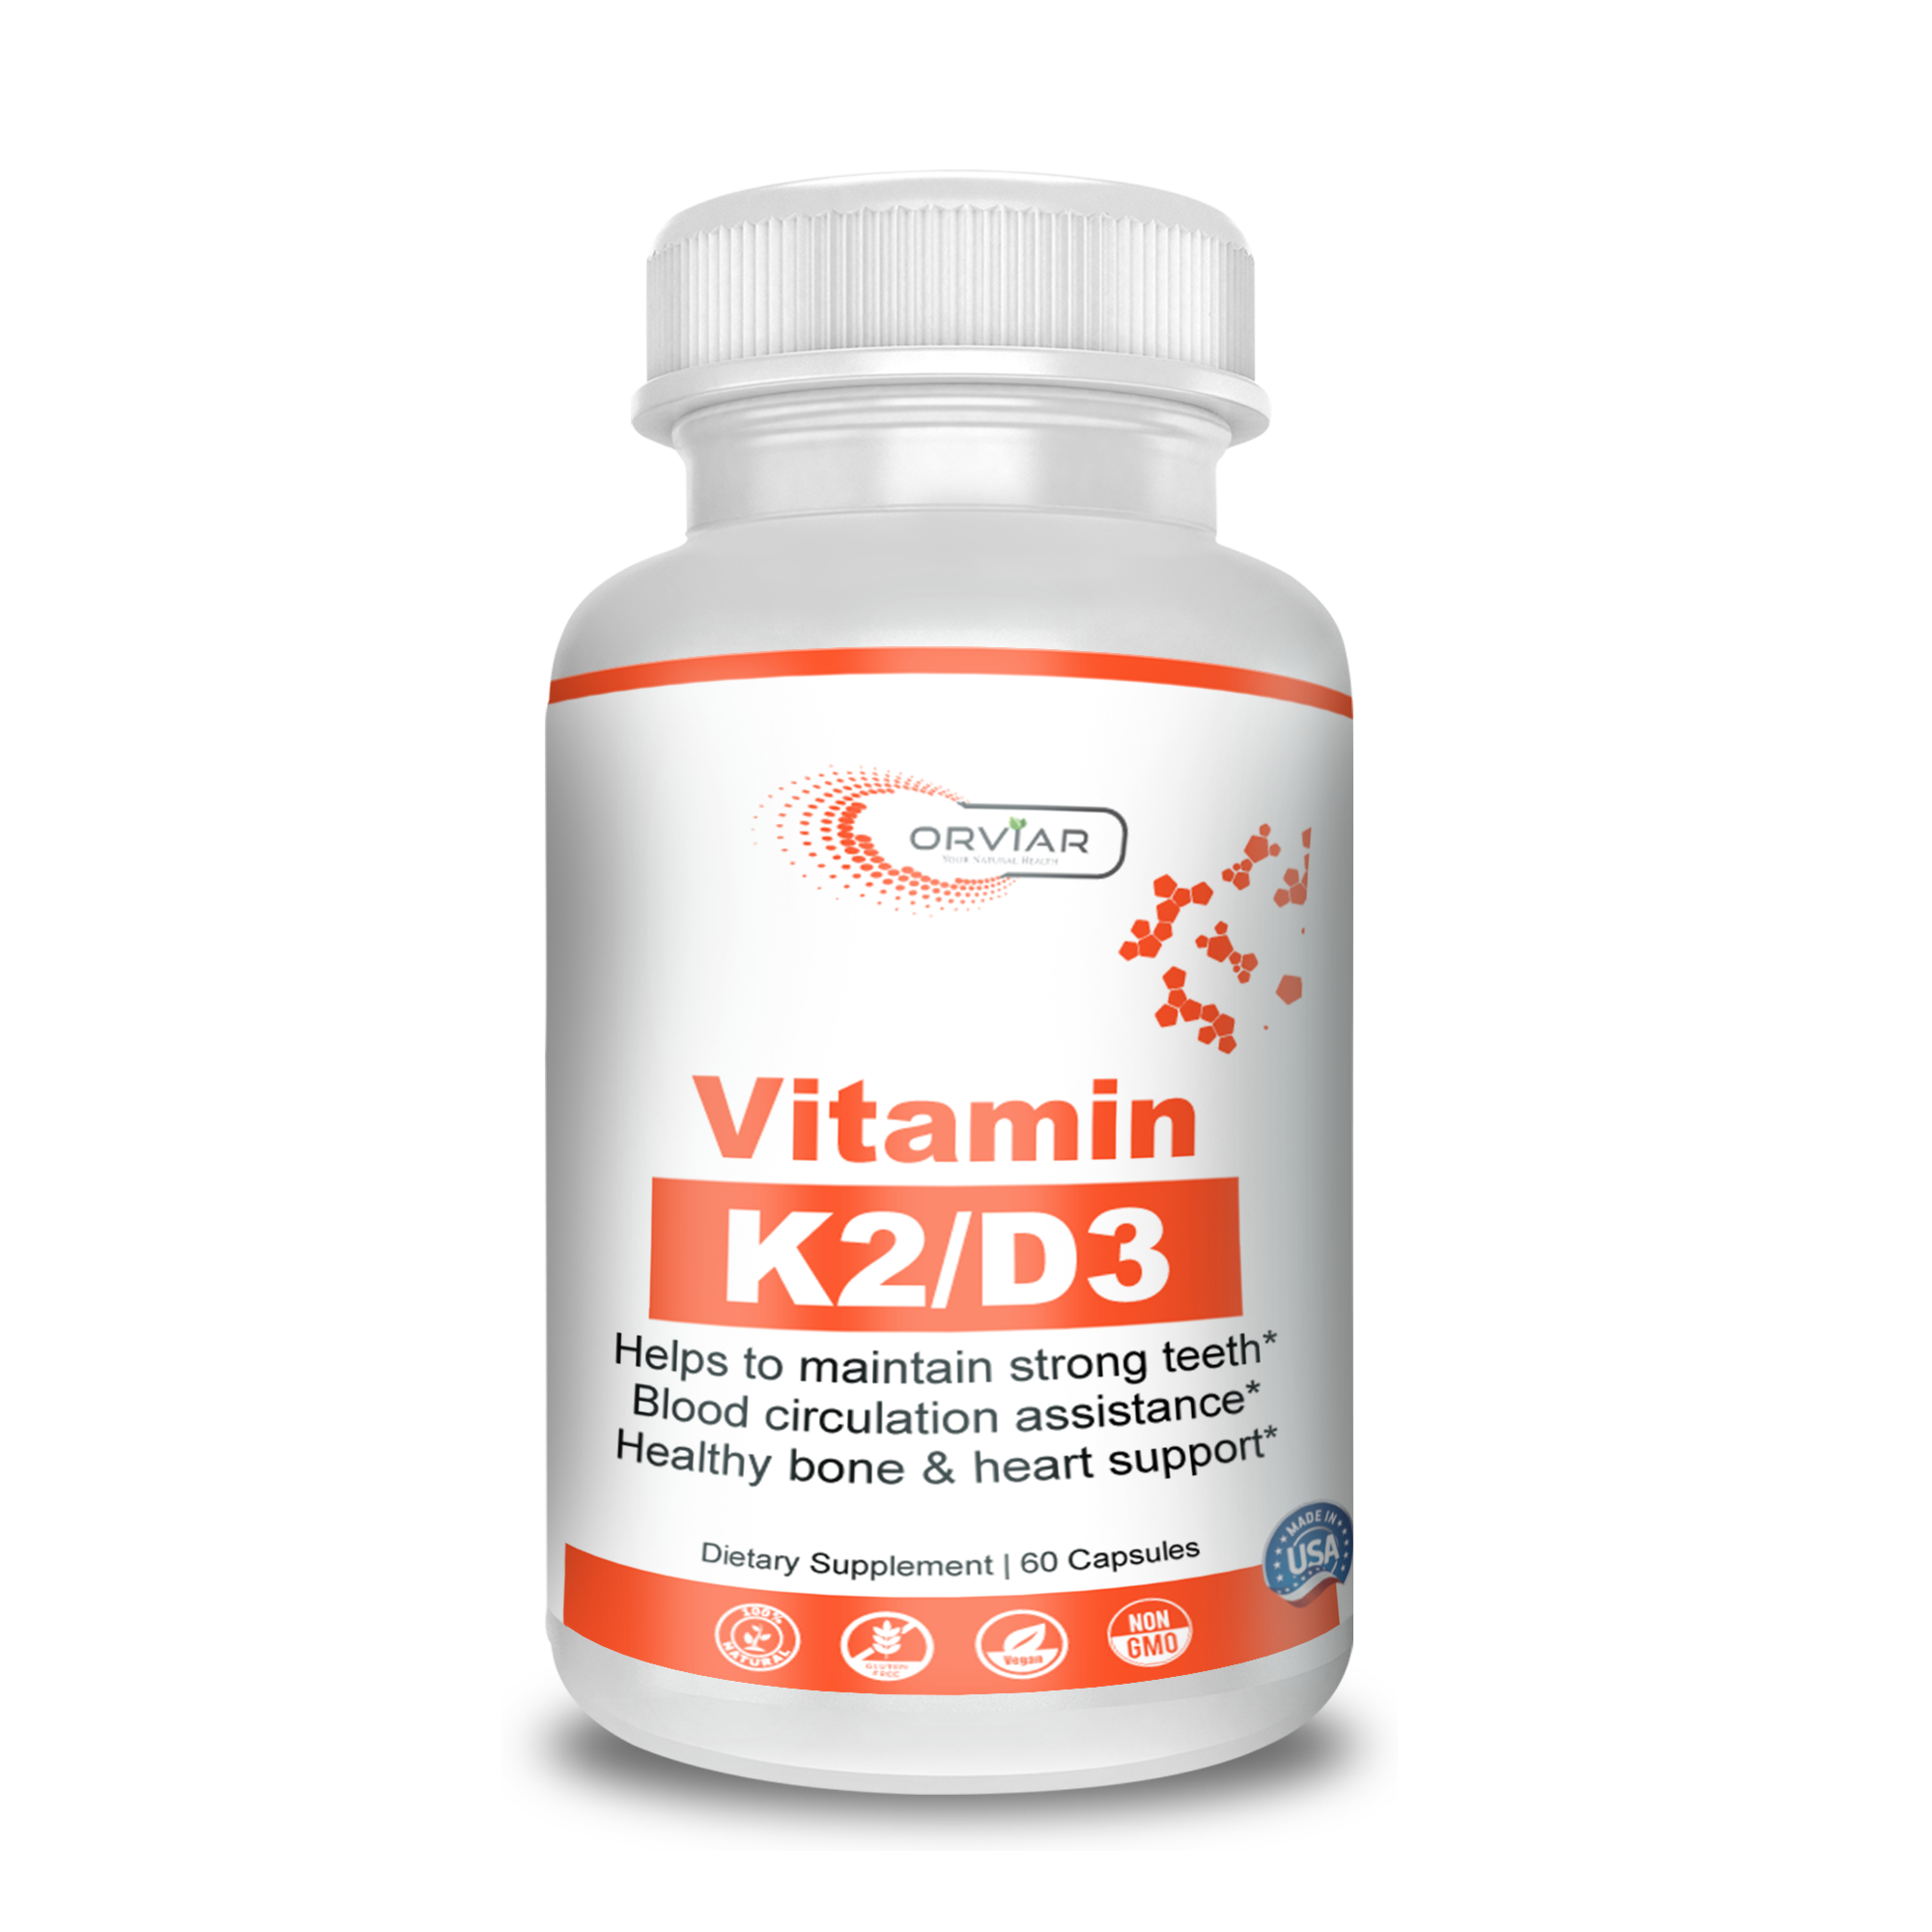 Vitamines K2 / D3 -  Préservation des dents et favorise un taux de calcium normal.